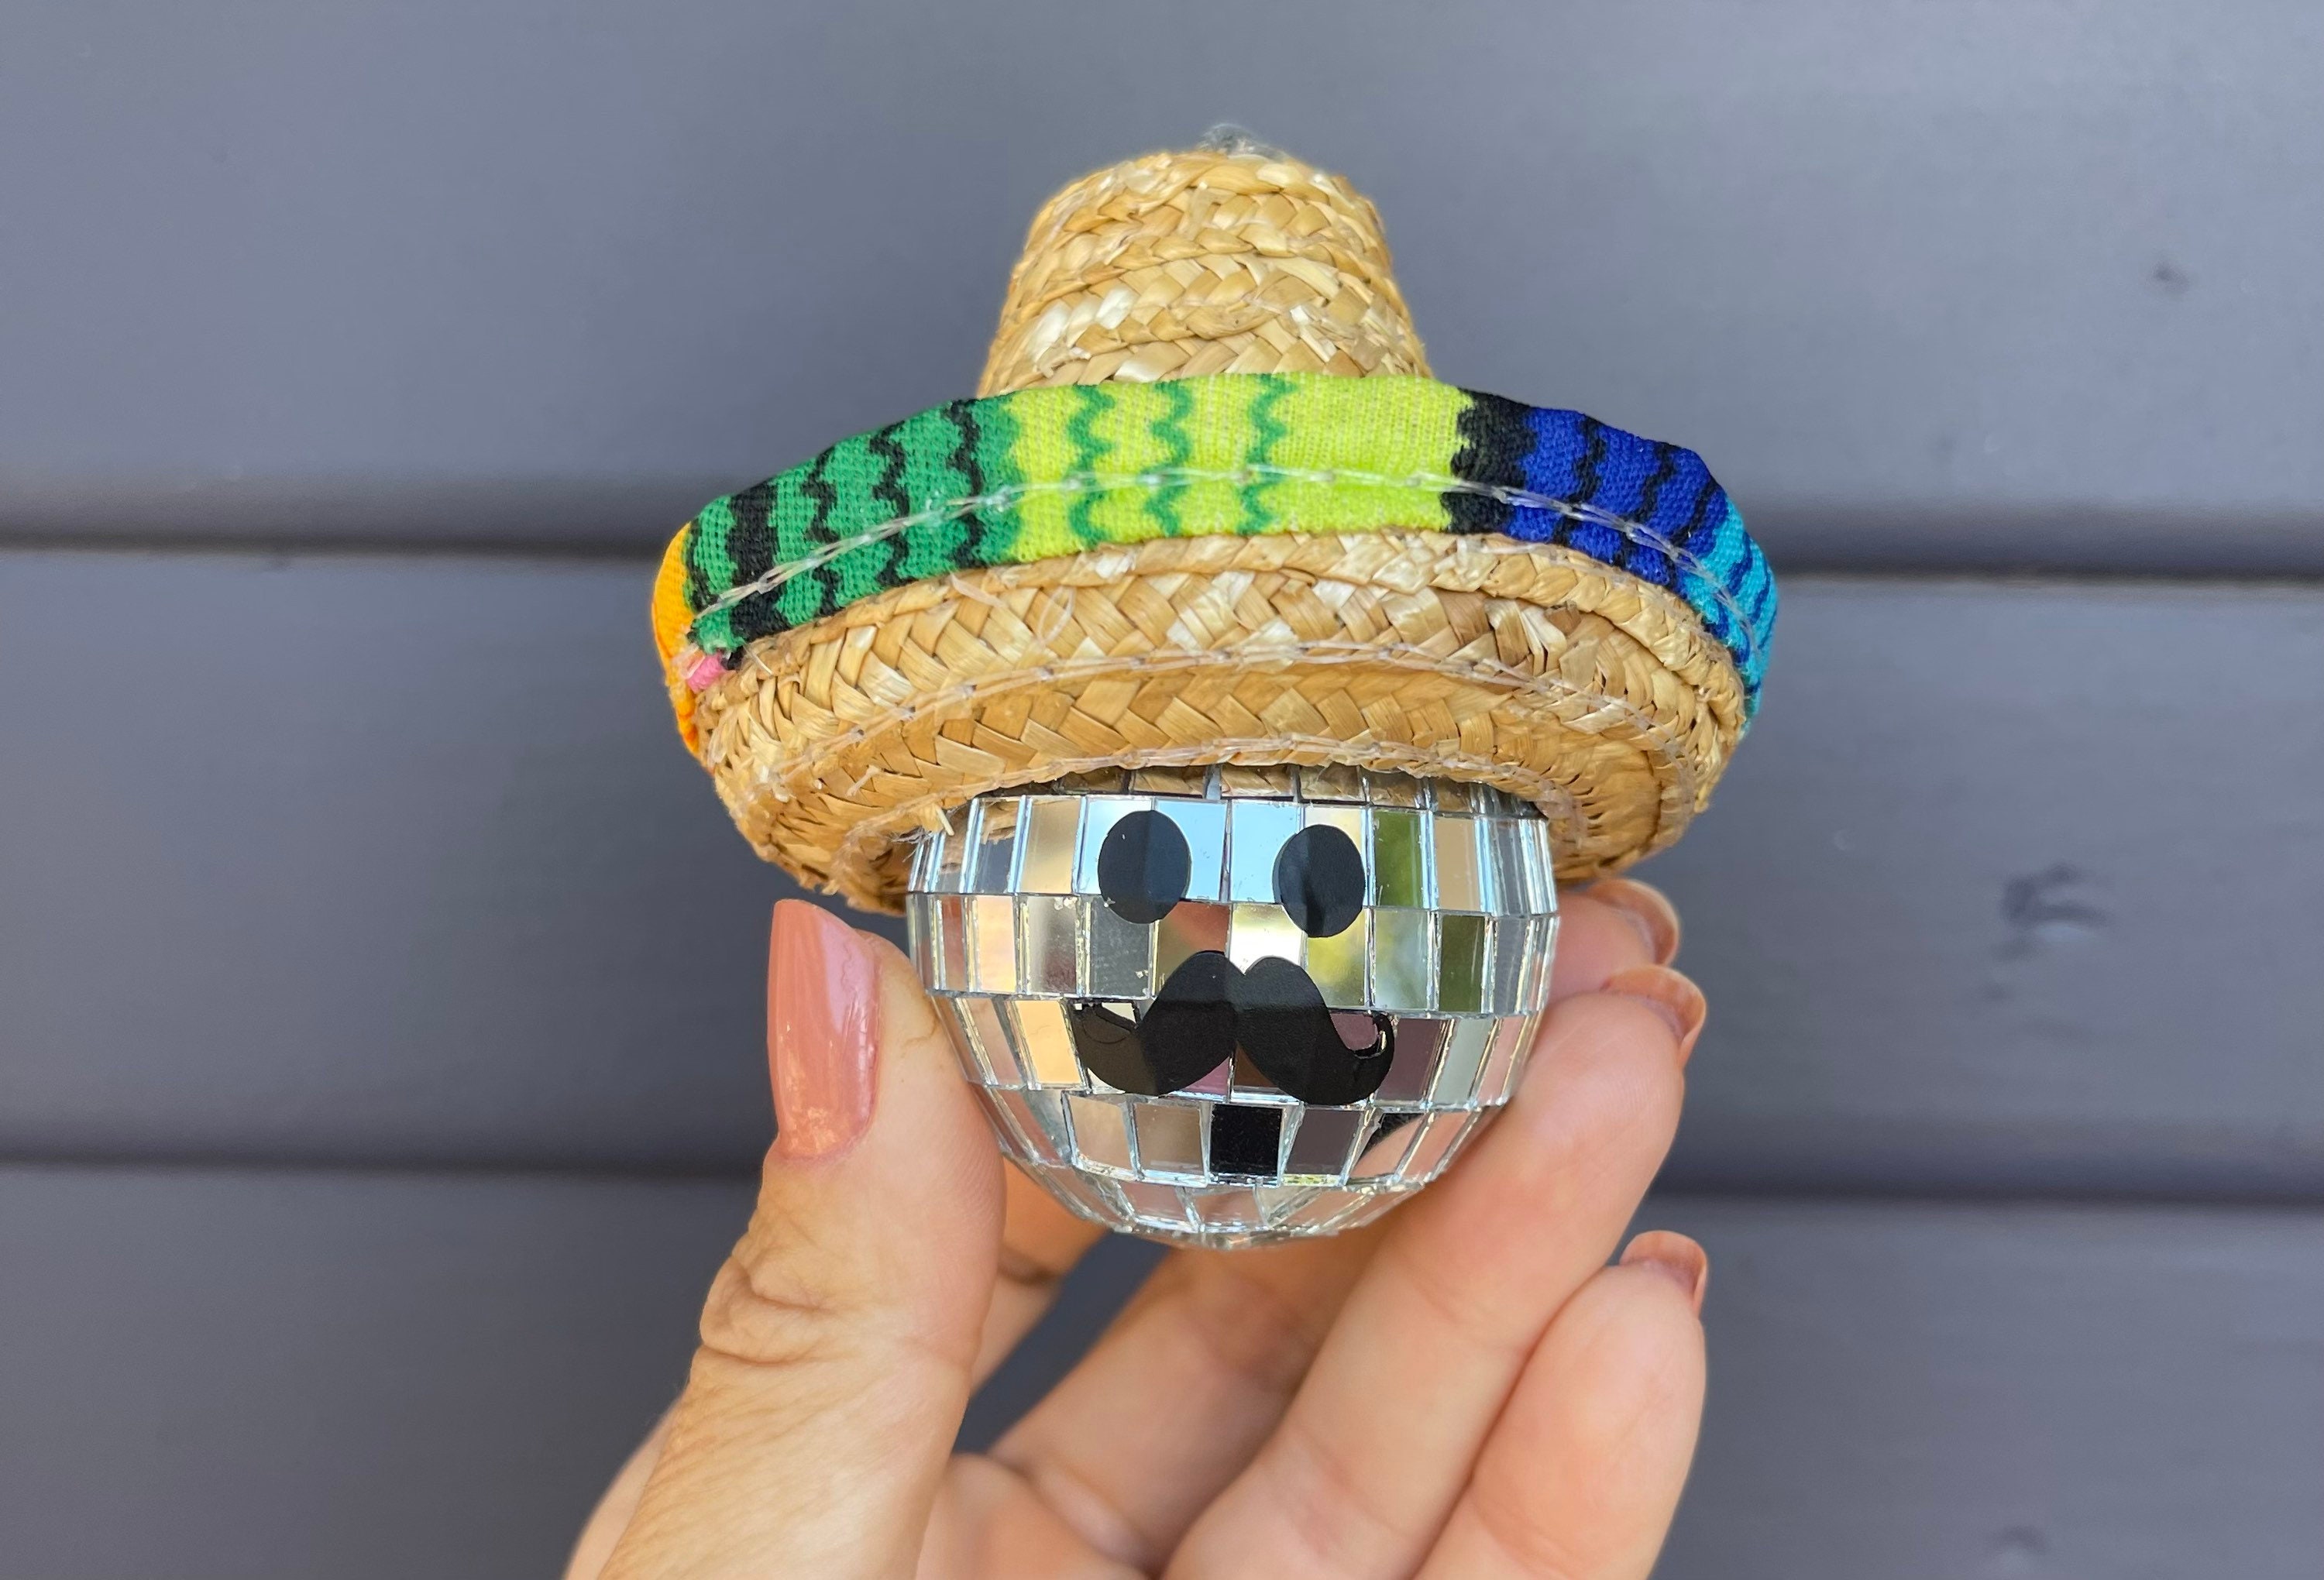 Discokugel trägt einen mexikanischen Sombrero-Hut und Schnurrbart - .de